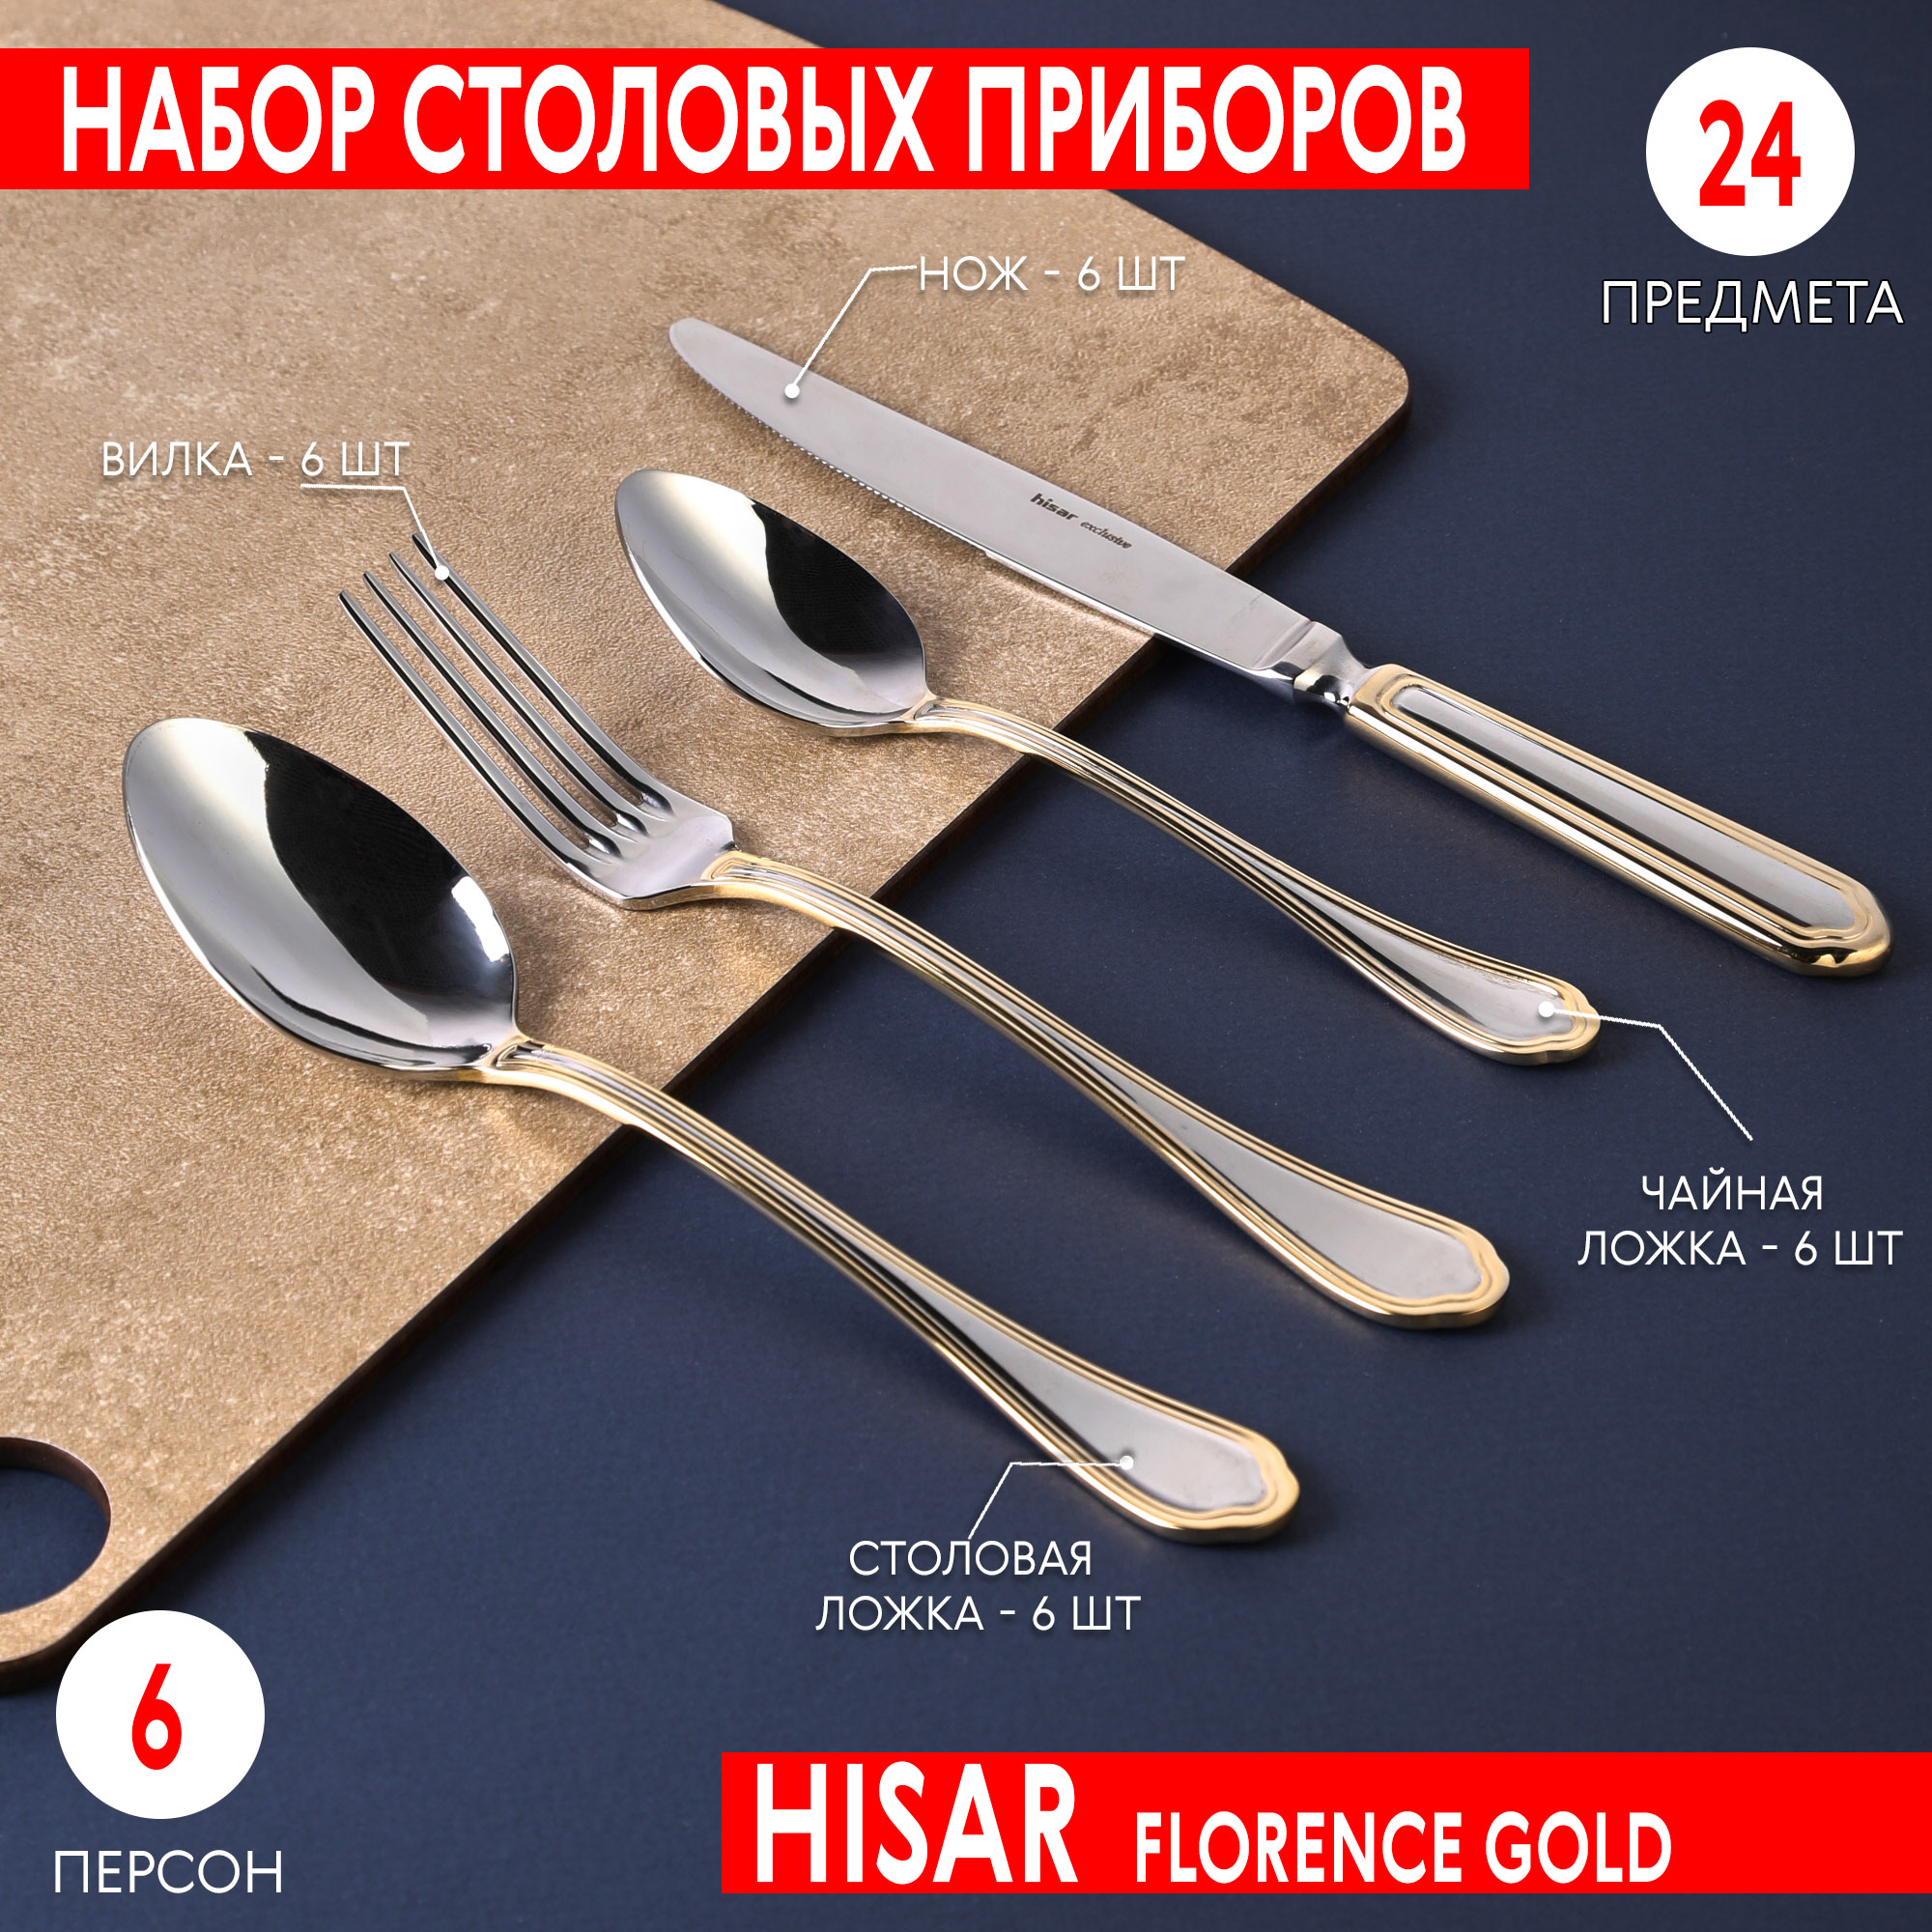 Набор столовых приборов Hisar Florence gold 6 персон 24 предмета, цвет серебристый - фото 2